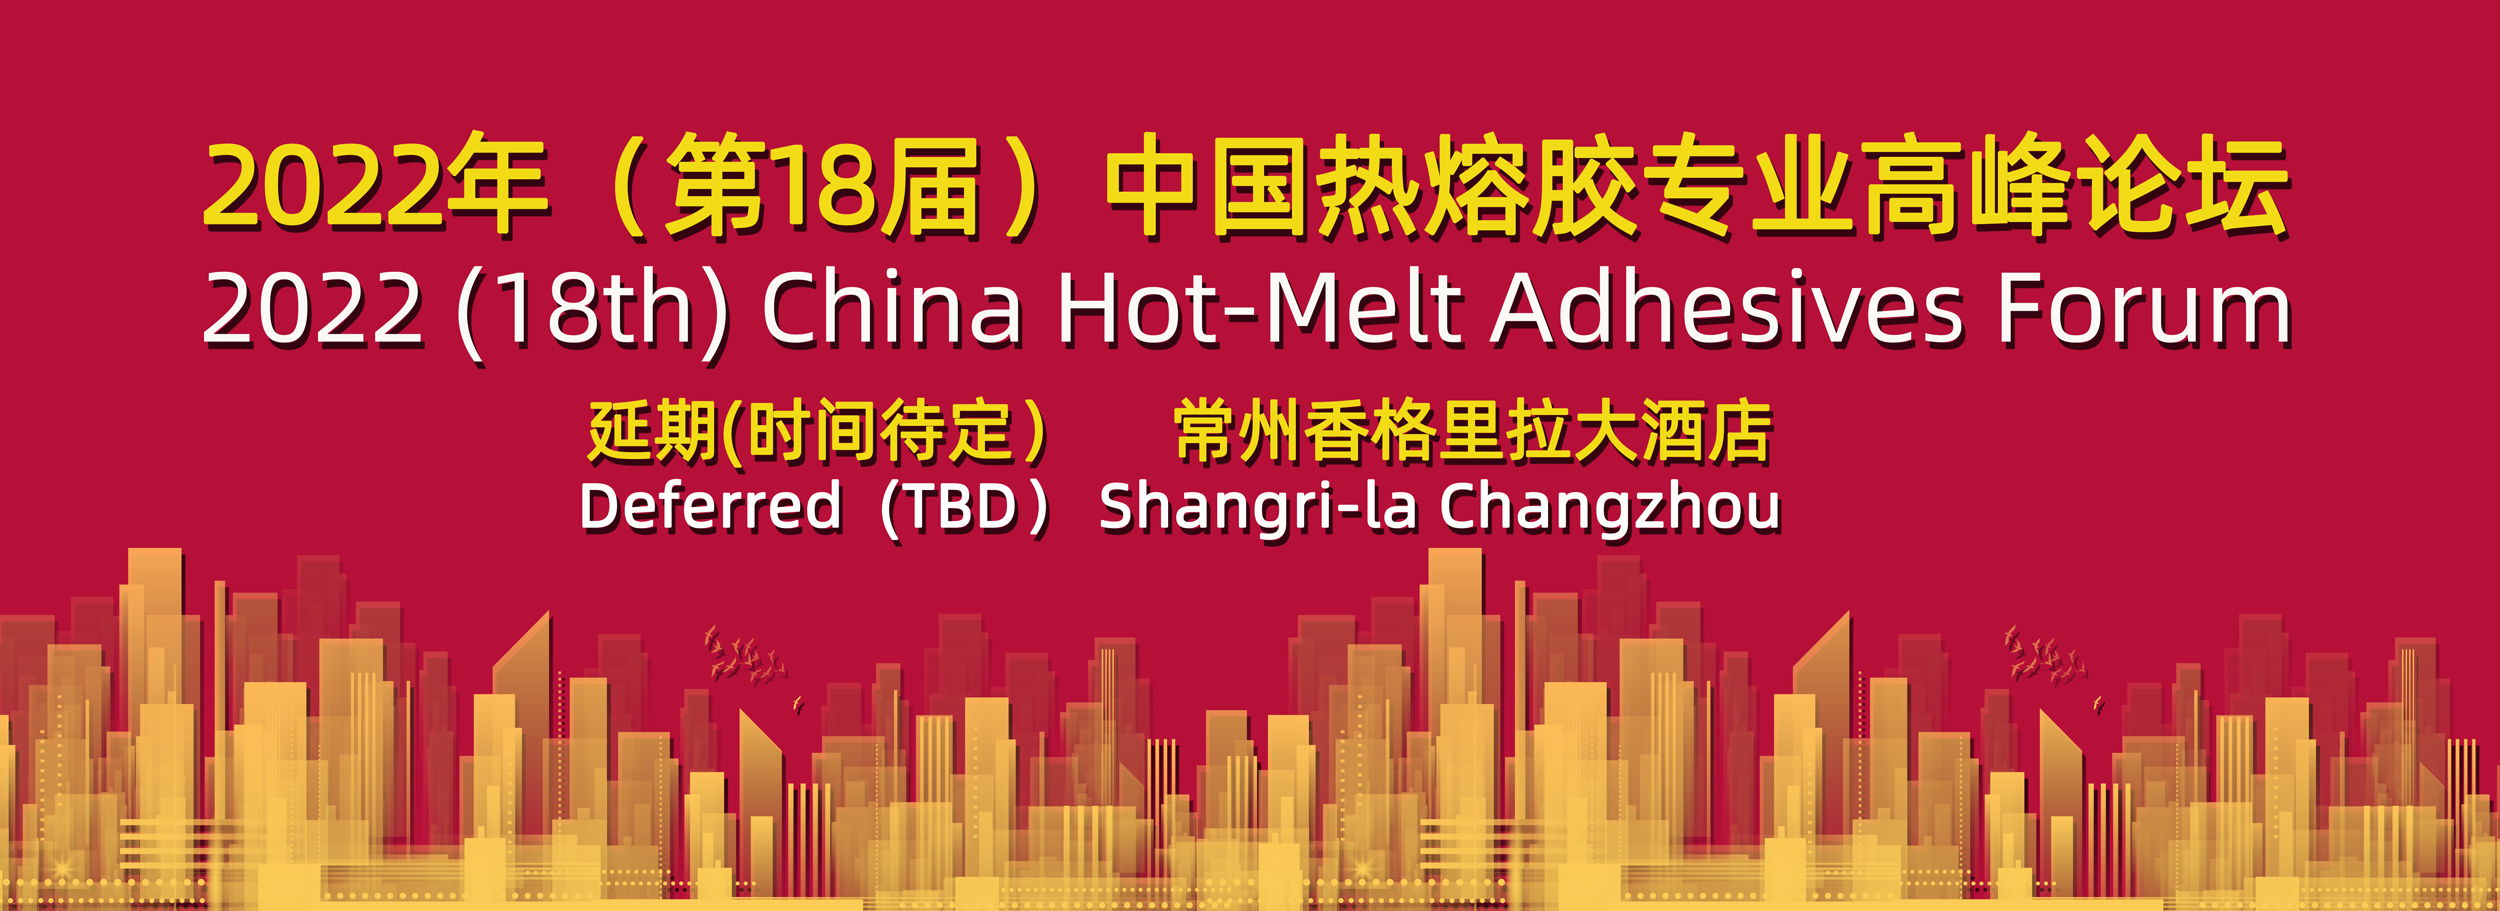 关于召开2022年(第18届)中国热熔胶专业高峰论坛